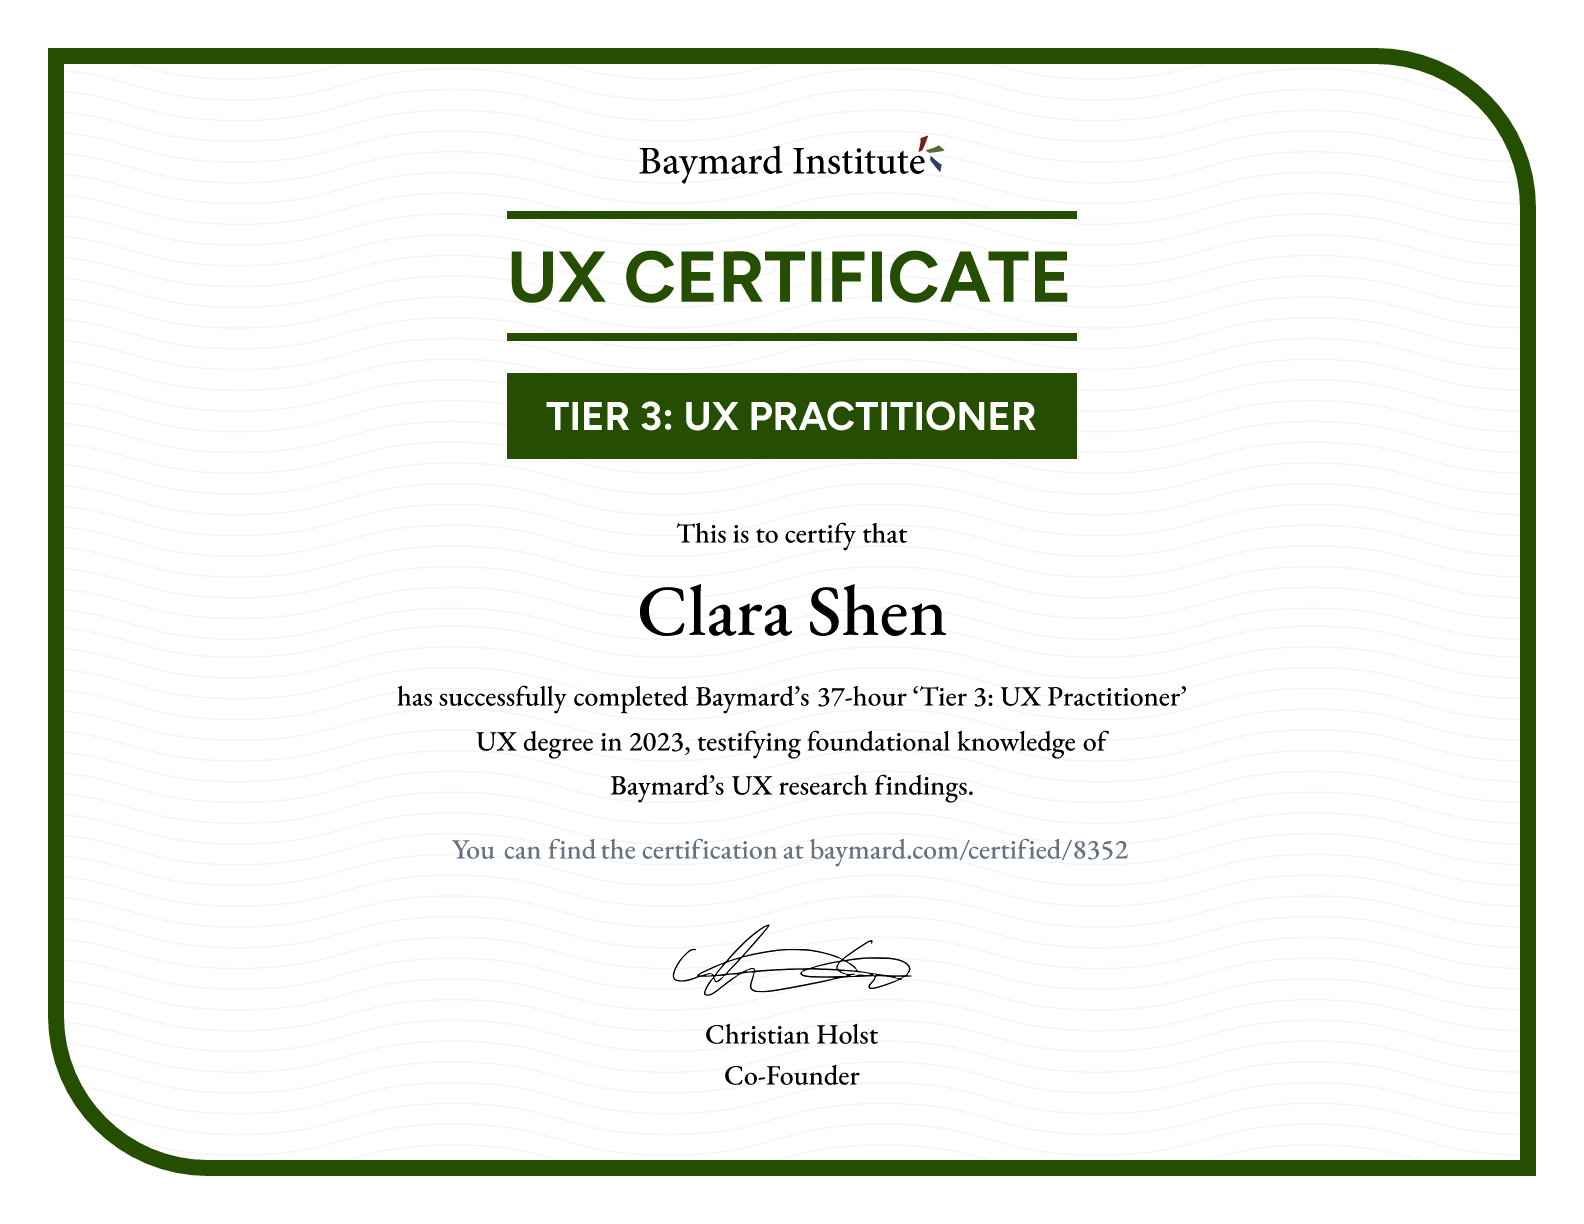 Clara Shen’s certificate